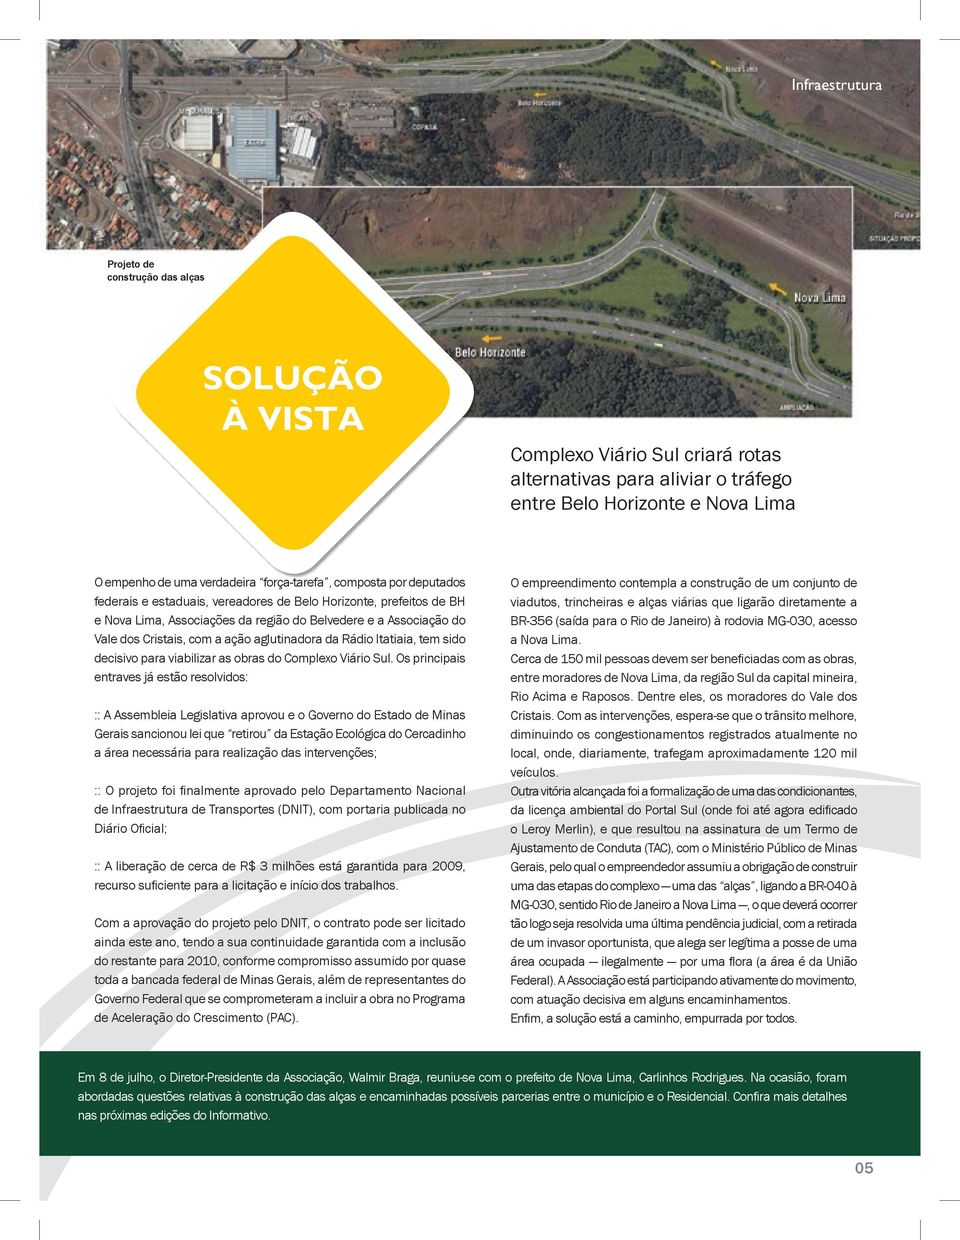 ação aglutinadora da Rádio Itatiaia, tem sido decisivo para viabilizar as obras do Complexo Viário Sul.